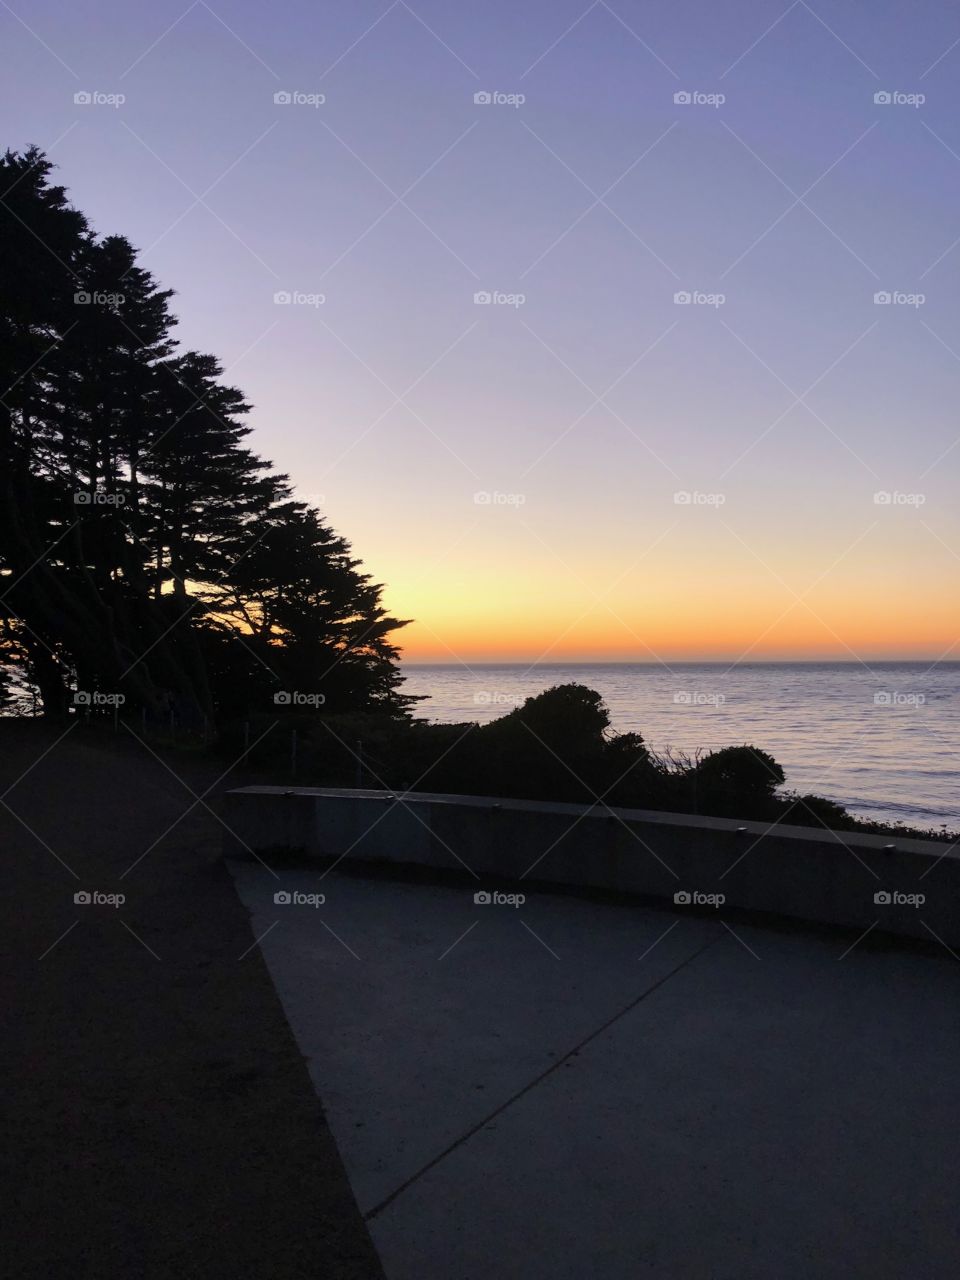 San Fran sunset 